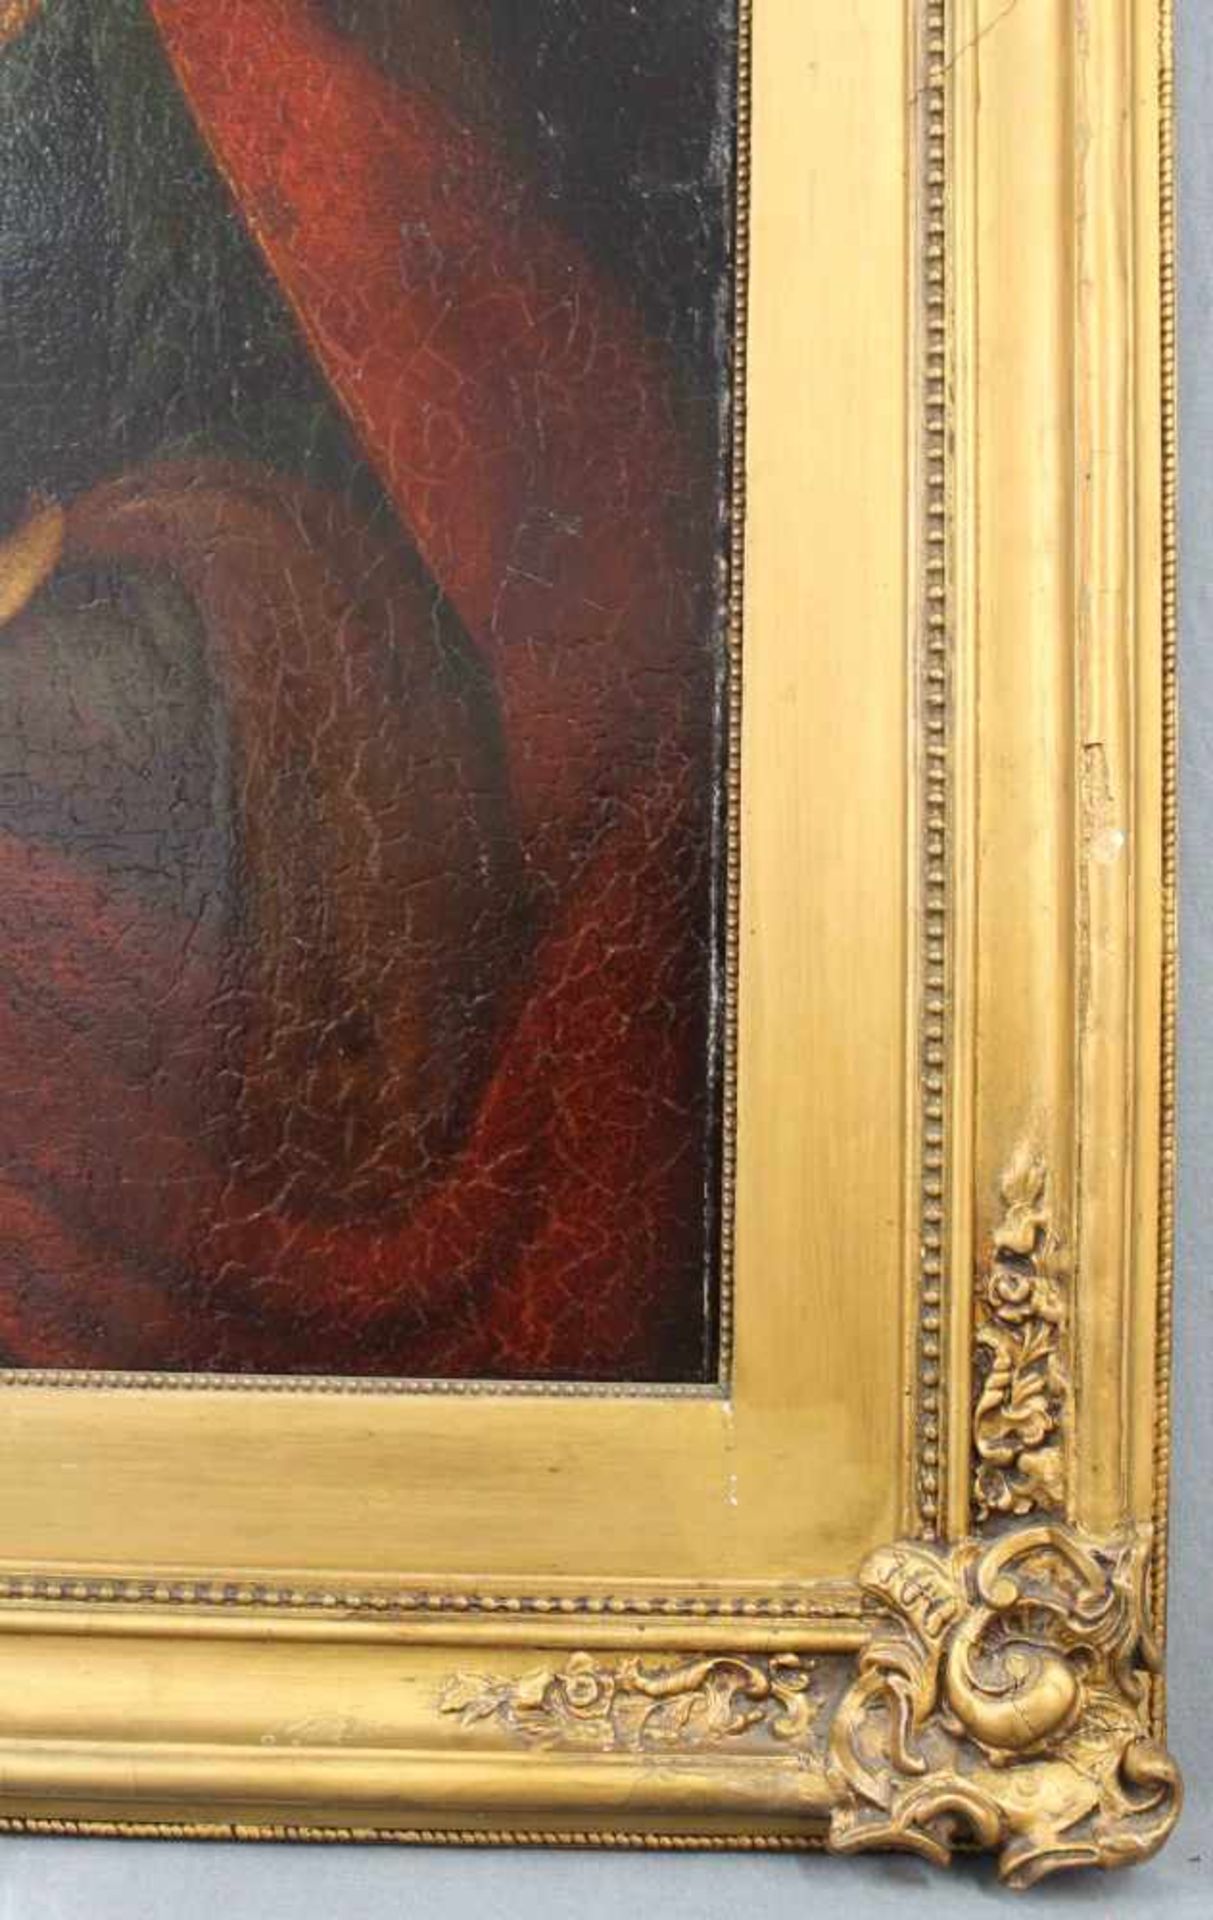 UNSIGNIERT (XVIII). Maria mit Jesus.66 cm x 54 cm. Öl auf Leinwand, u. a. doubliert. Keine - Image 6 of 7